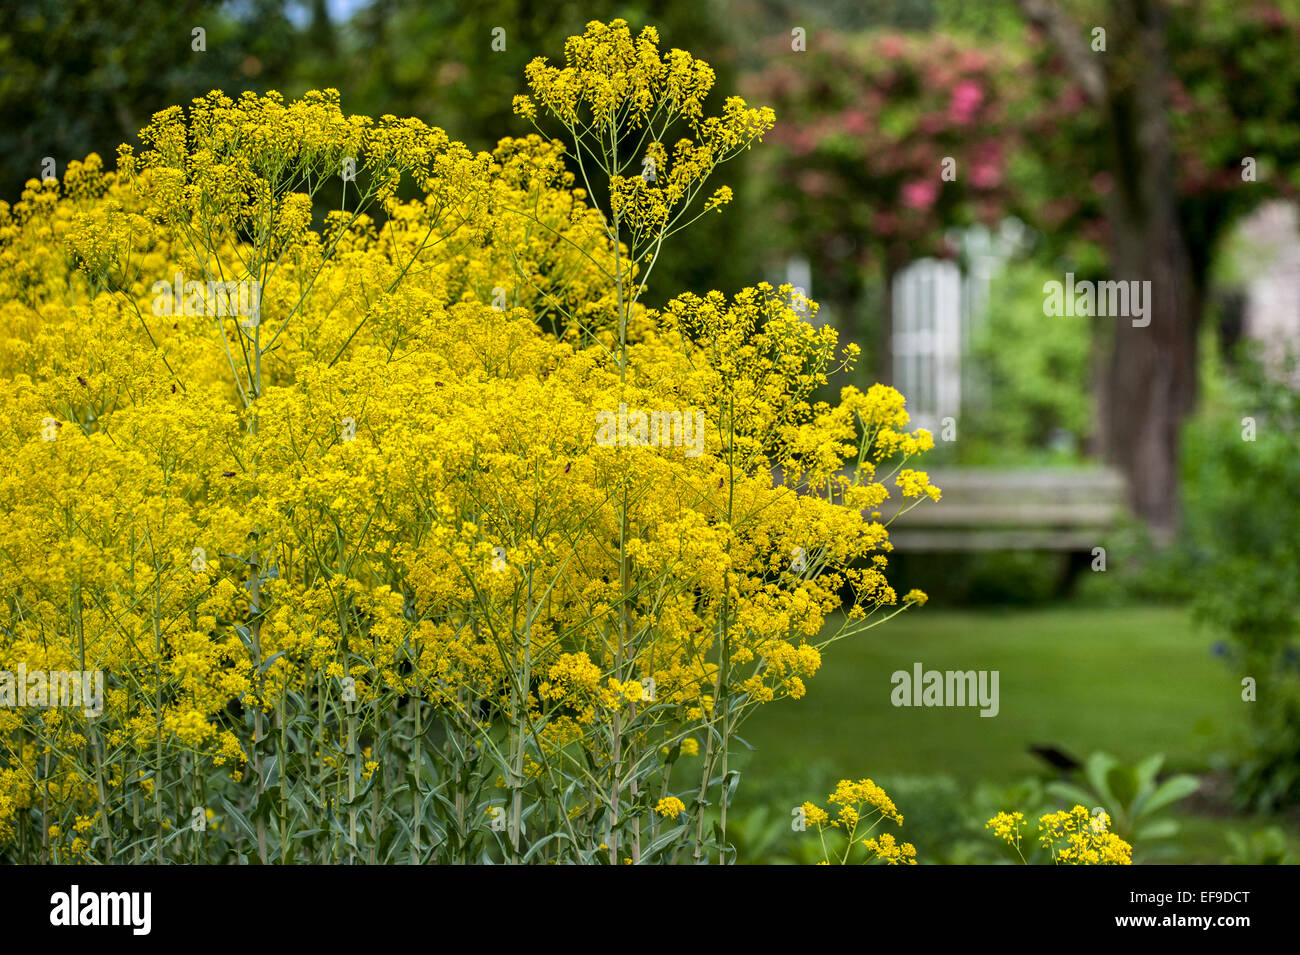 Dyer's woad / glastum (Isatis tinctoria) in flower garden Stock Photo